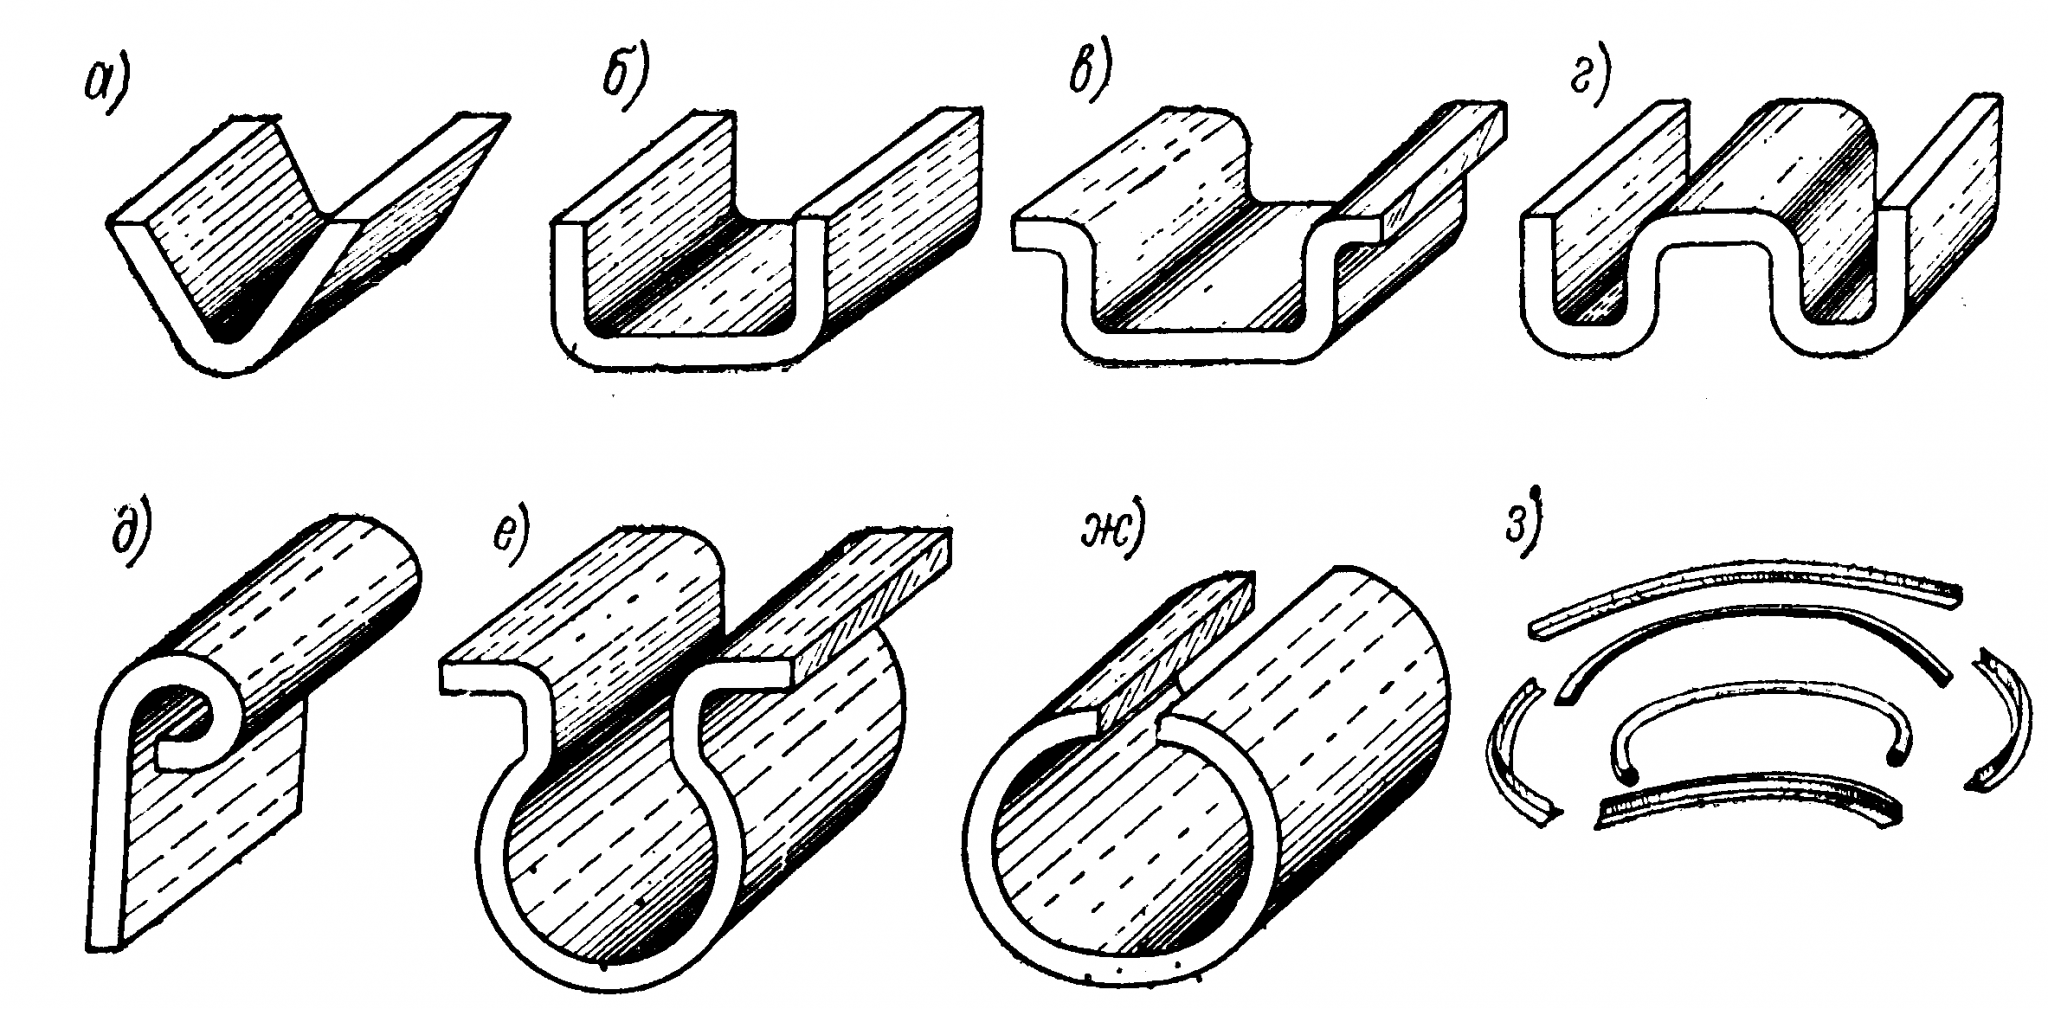 Как согнуть трубу без трубогиба – проверенные варианты для разных видов труб